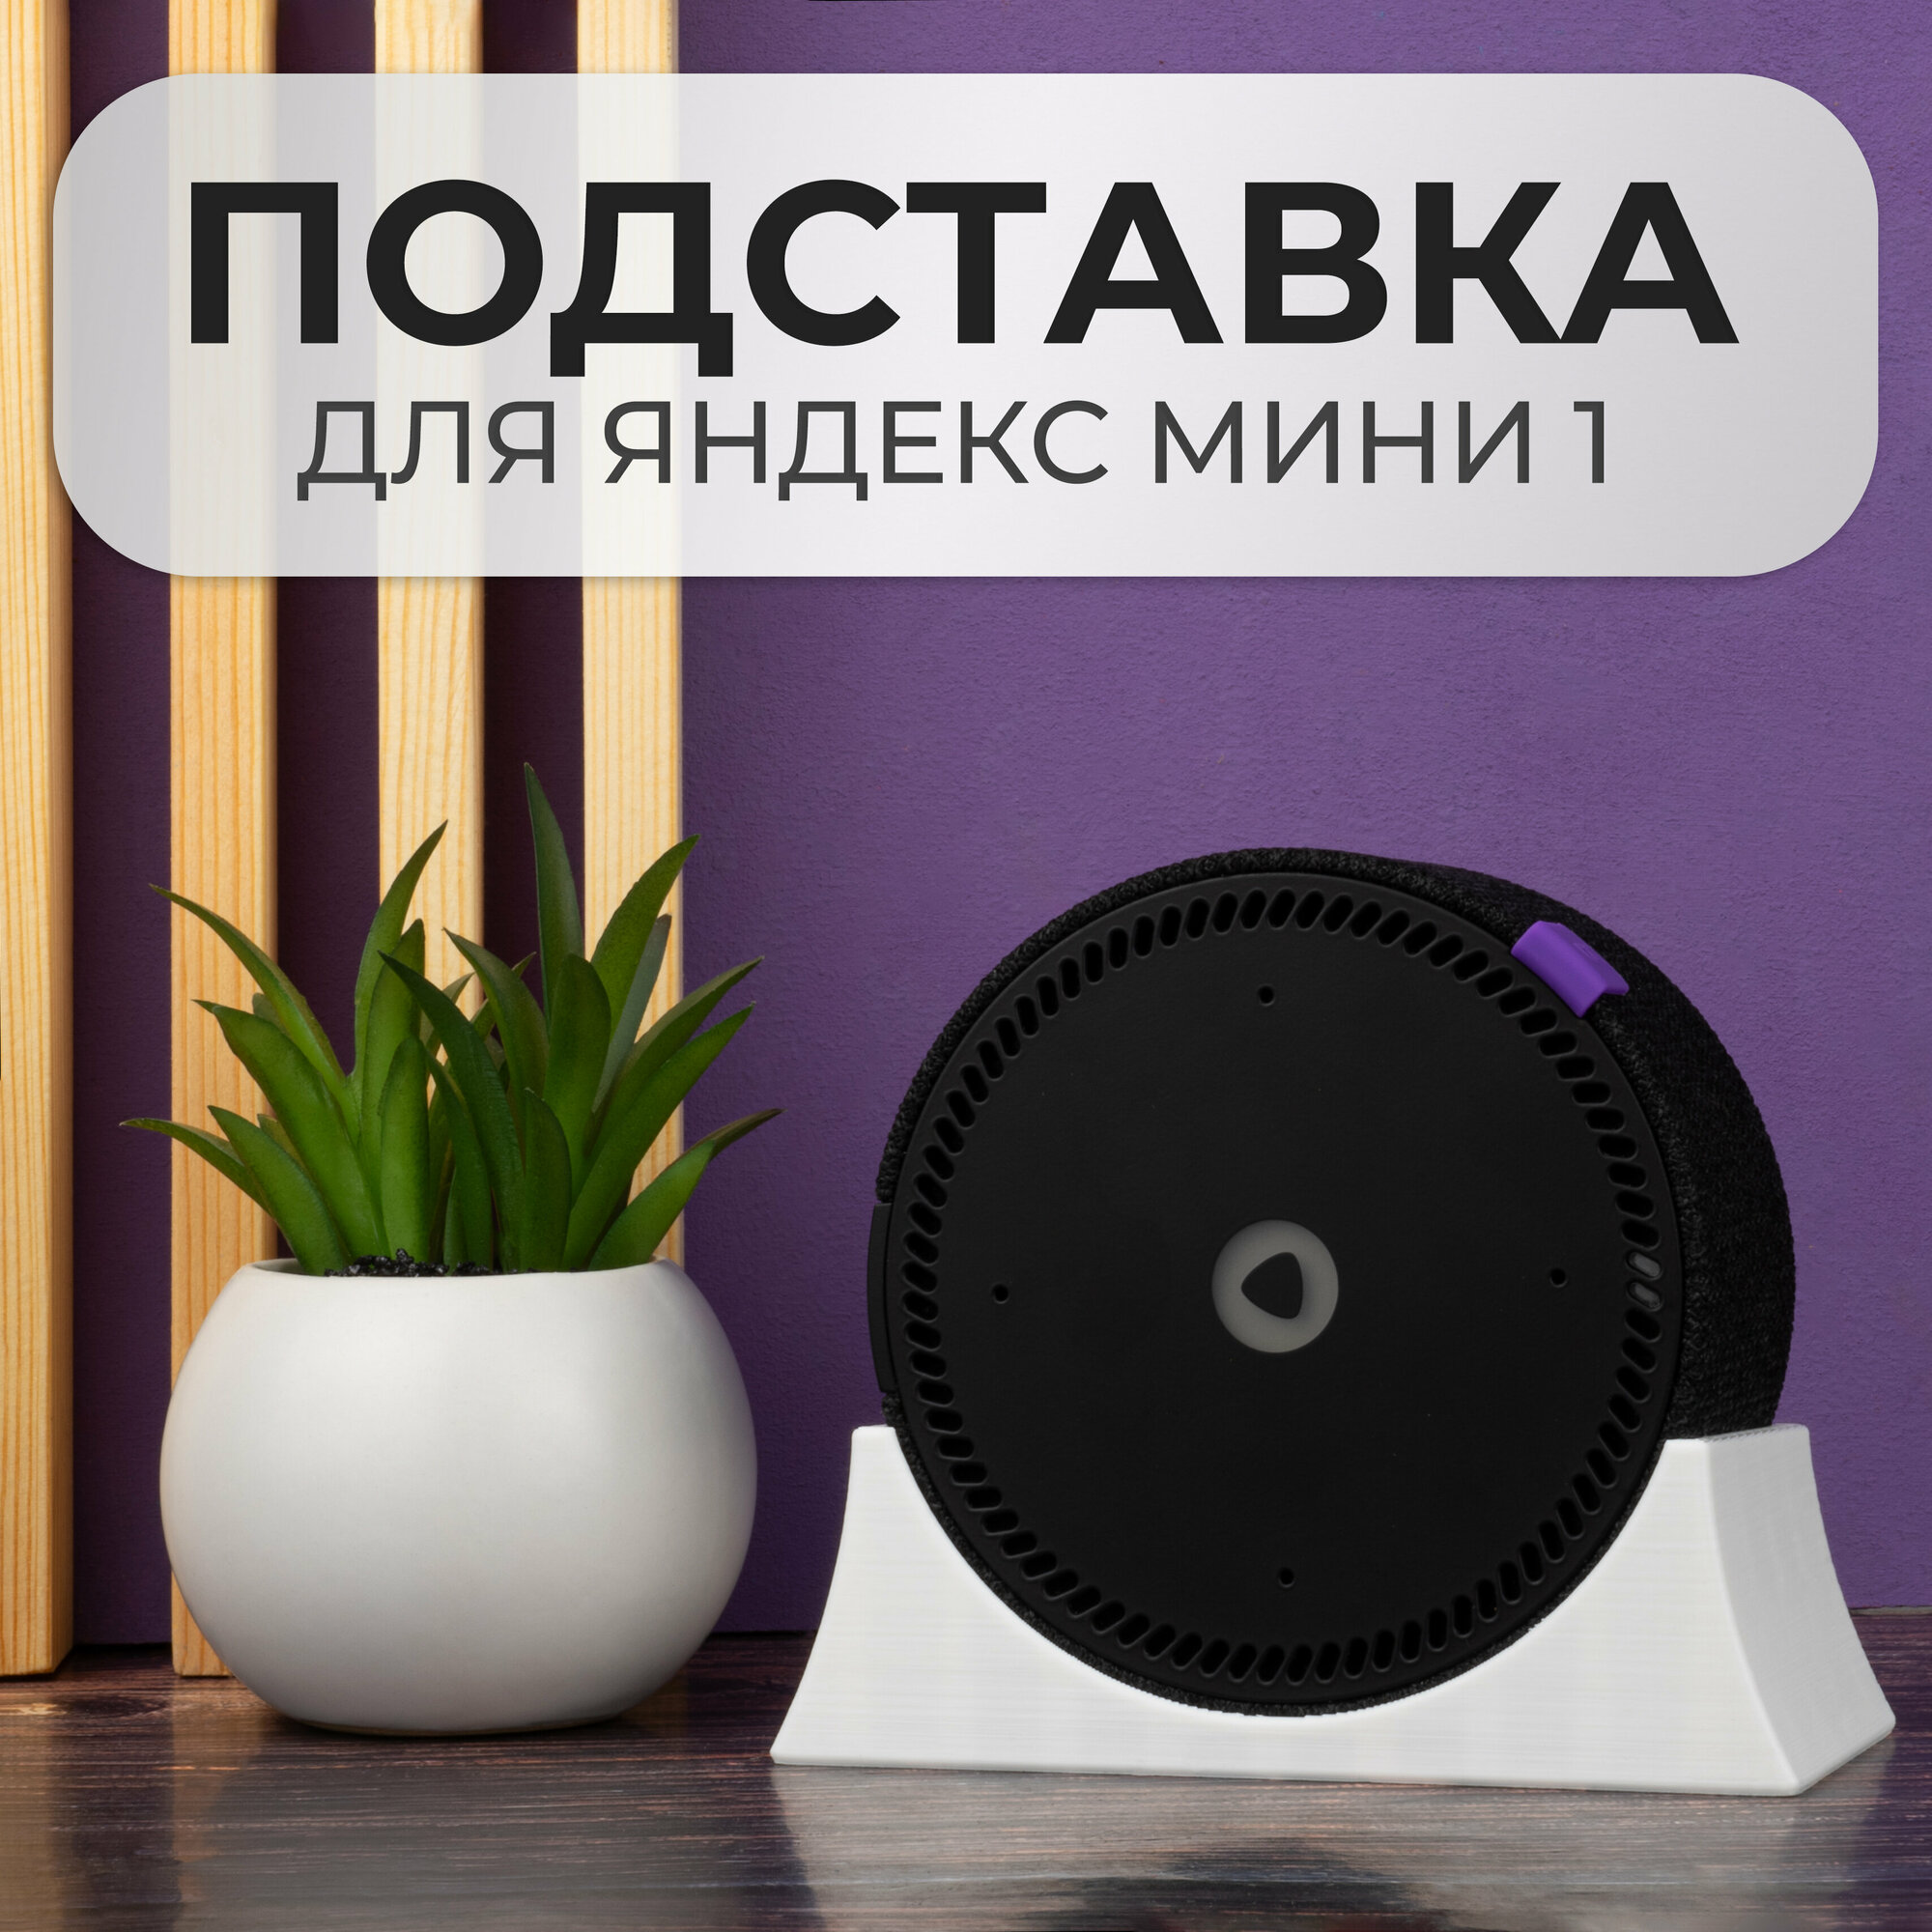 Крепление подставка для Яндекс Станции Мини 1 поколения